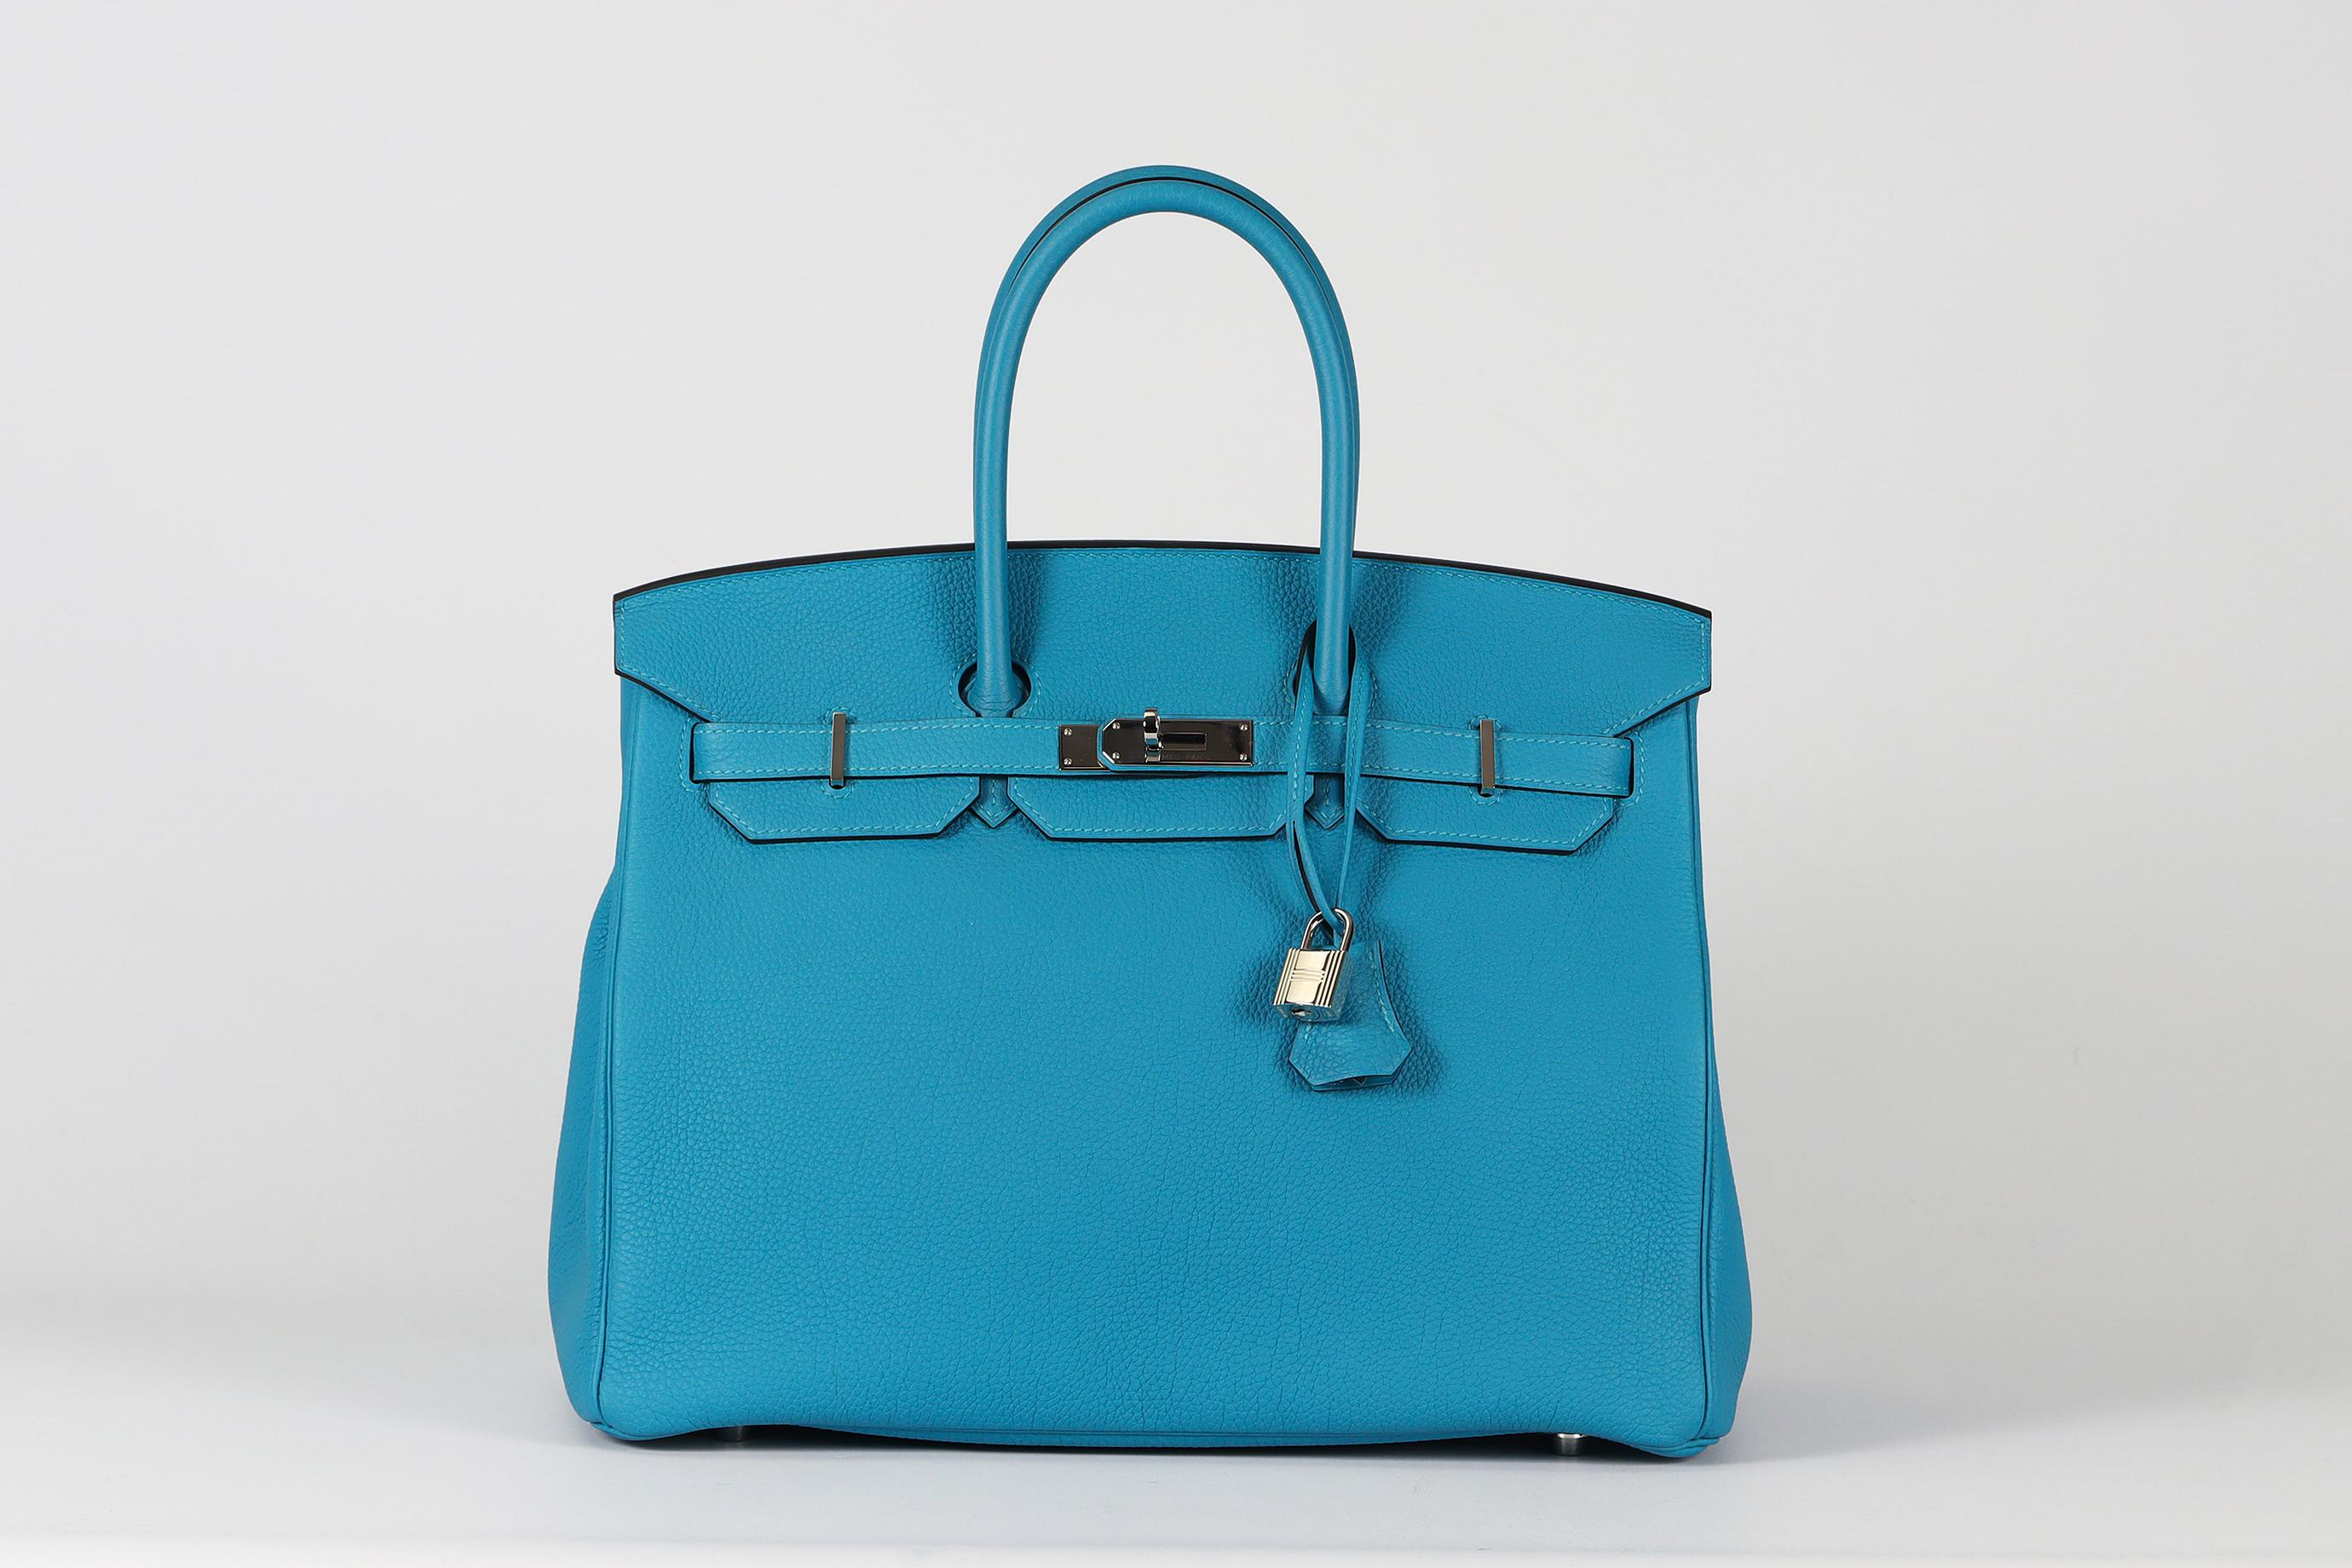 <ul>
<li>Hermès 2014 Birkin 35Cm Togo Leder Tasche.</li>
<li>Blau.</li>
<li>Diese schöne 2014 Hermès 